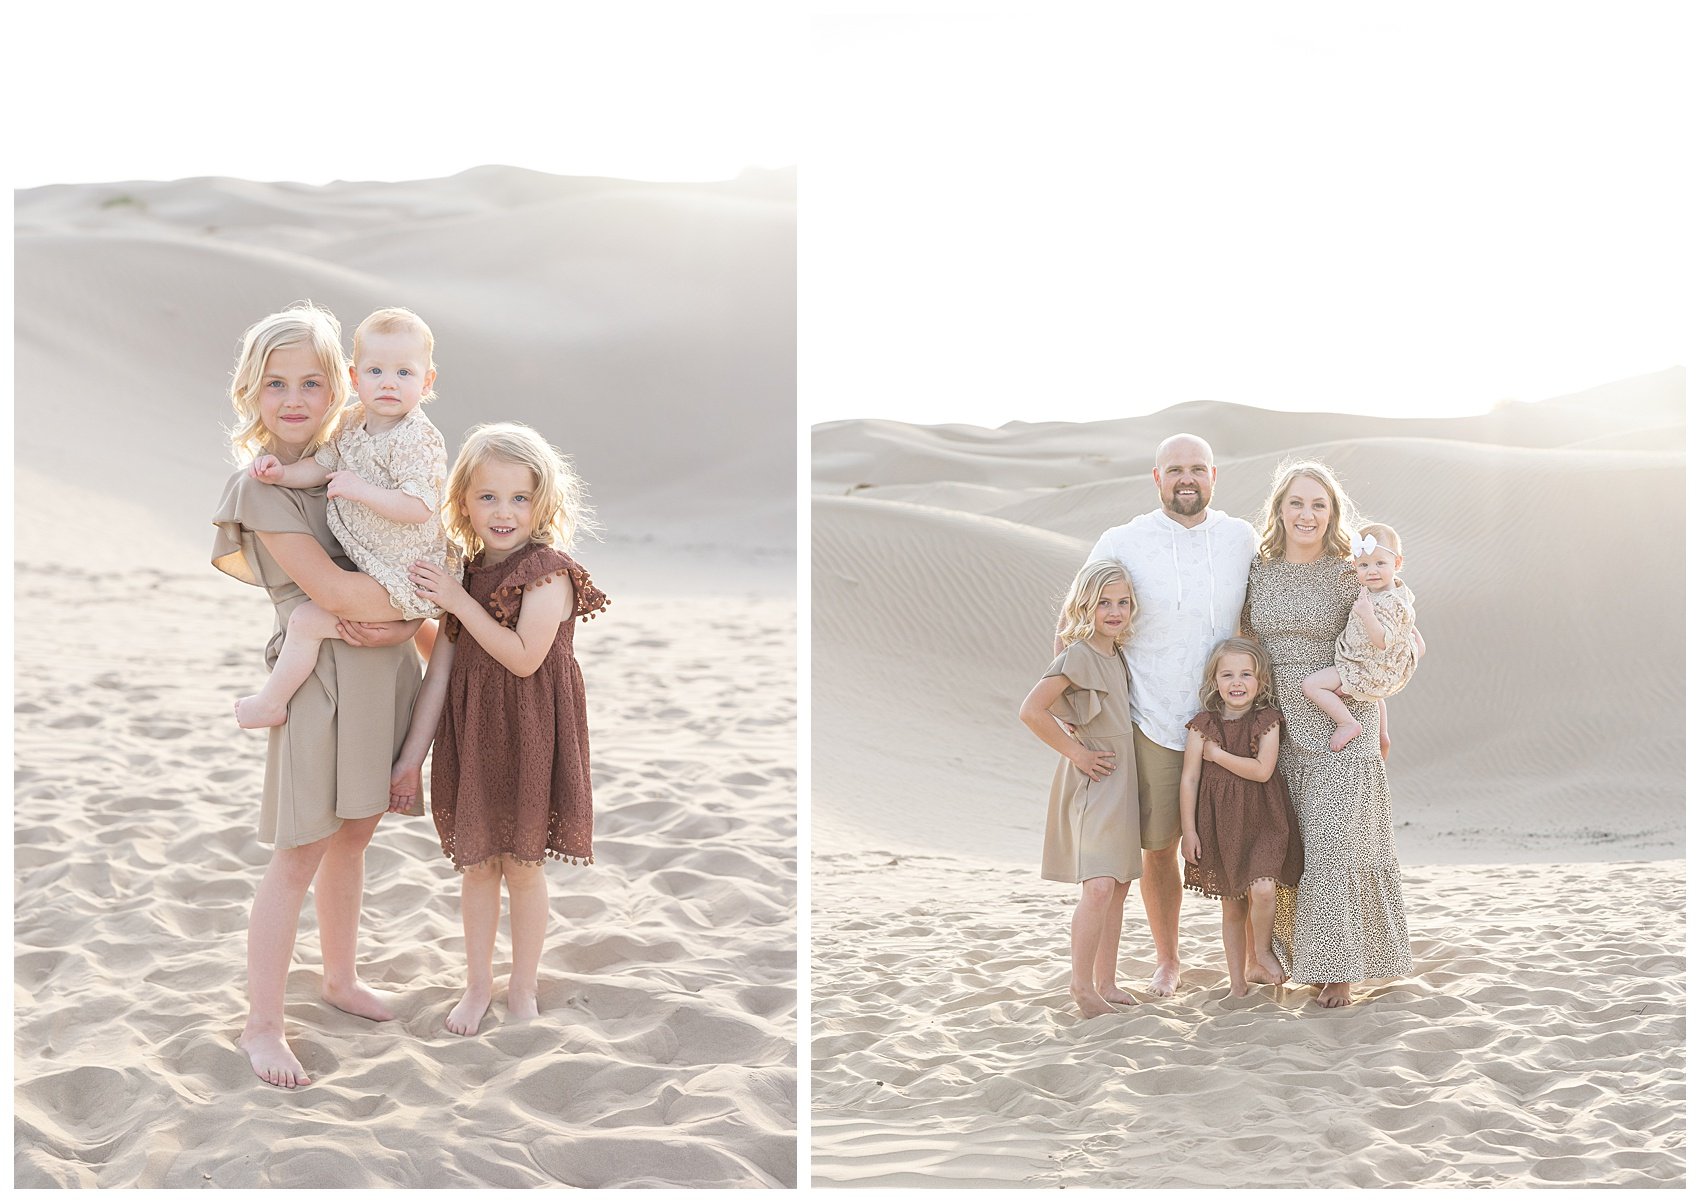 Family session in Little Sahara Sand Dunes by Salt Lake City family photographer